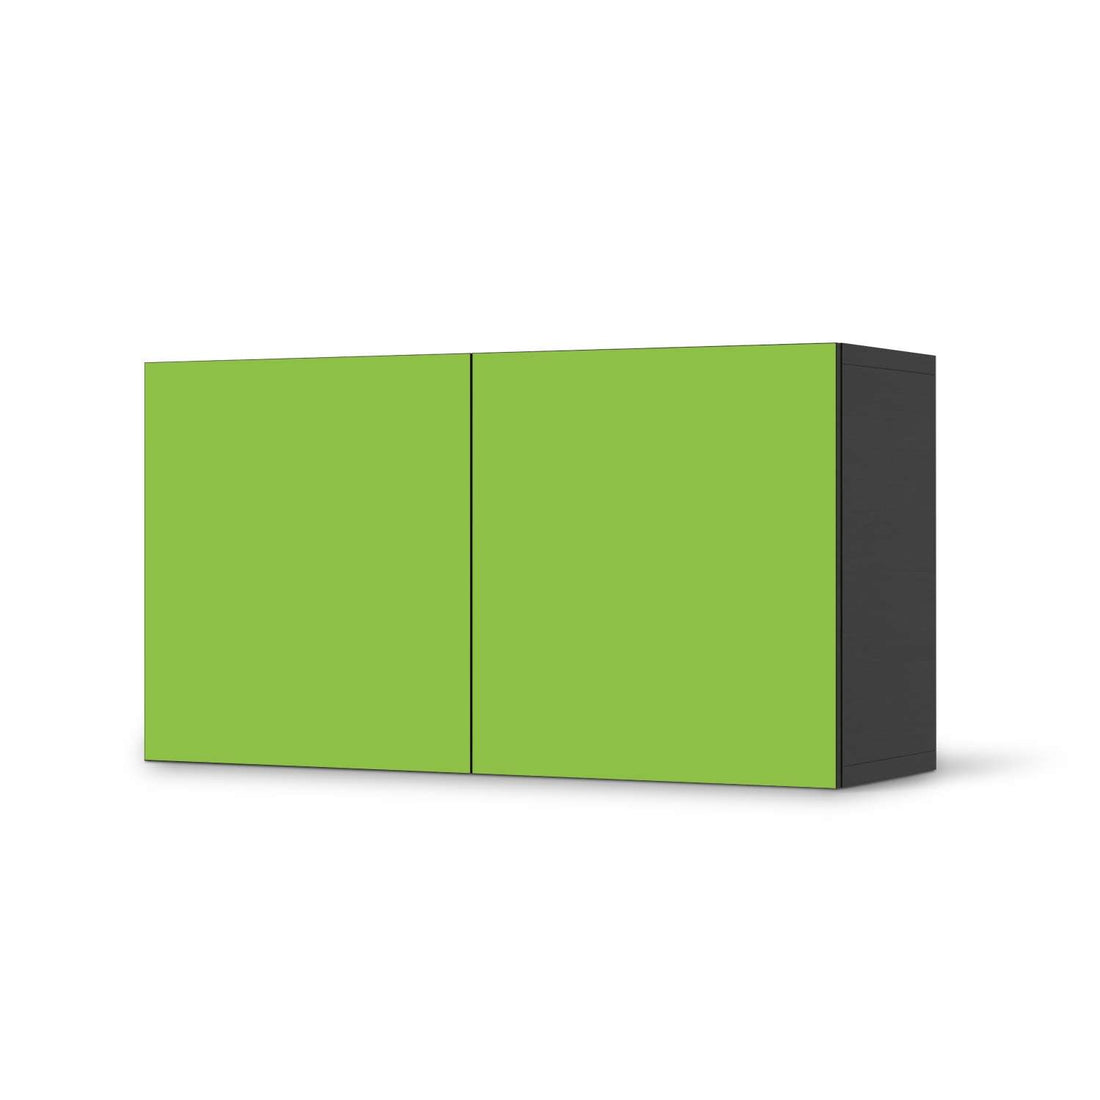 Folie für Möbel Hellgrün Dark - IKEA Besta Regal Quer 2 Türen - schwarz